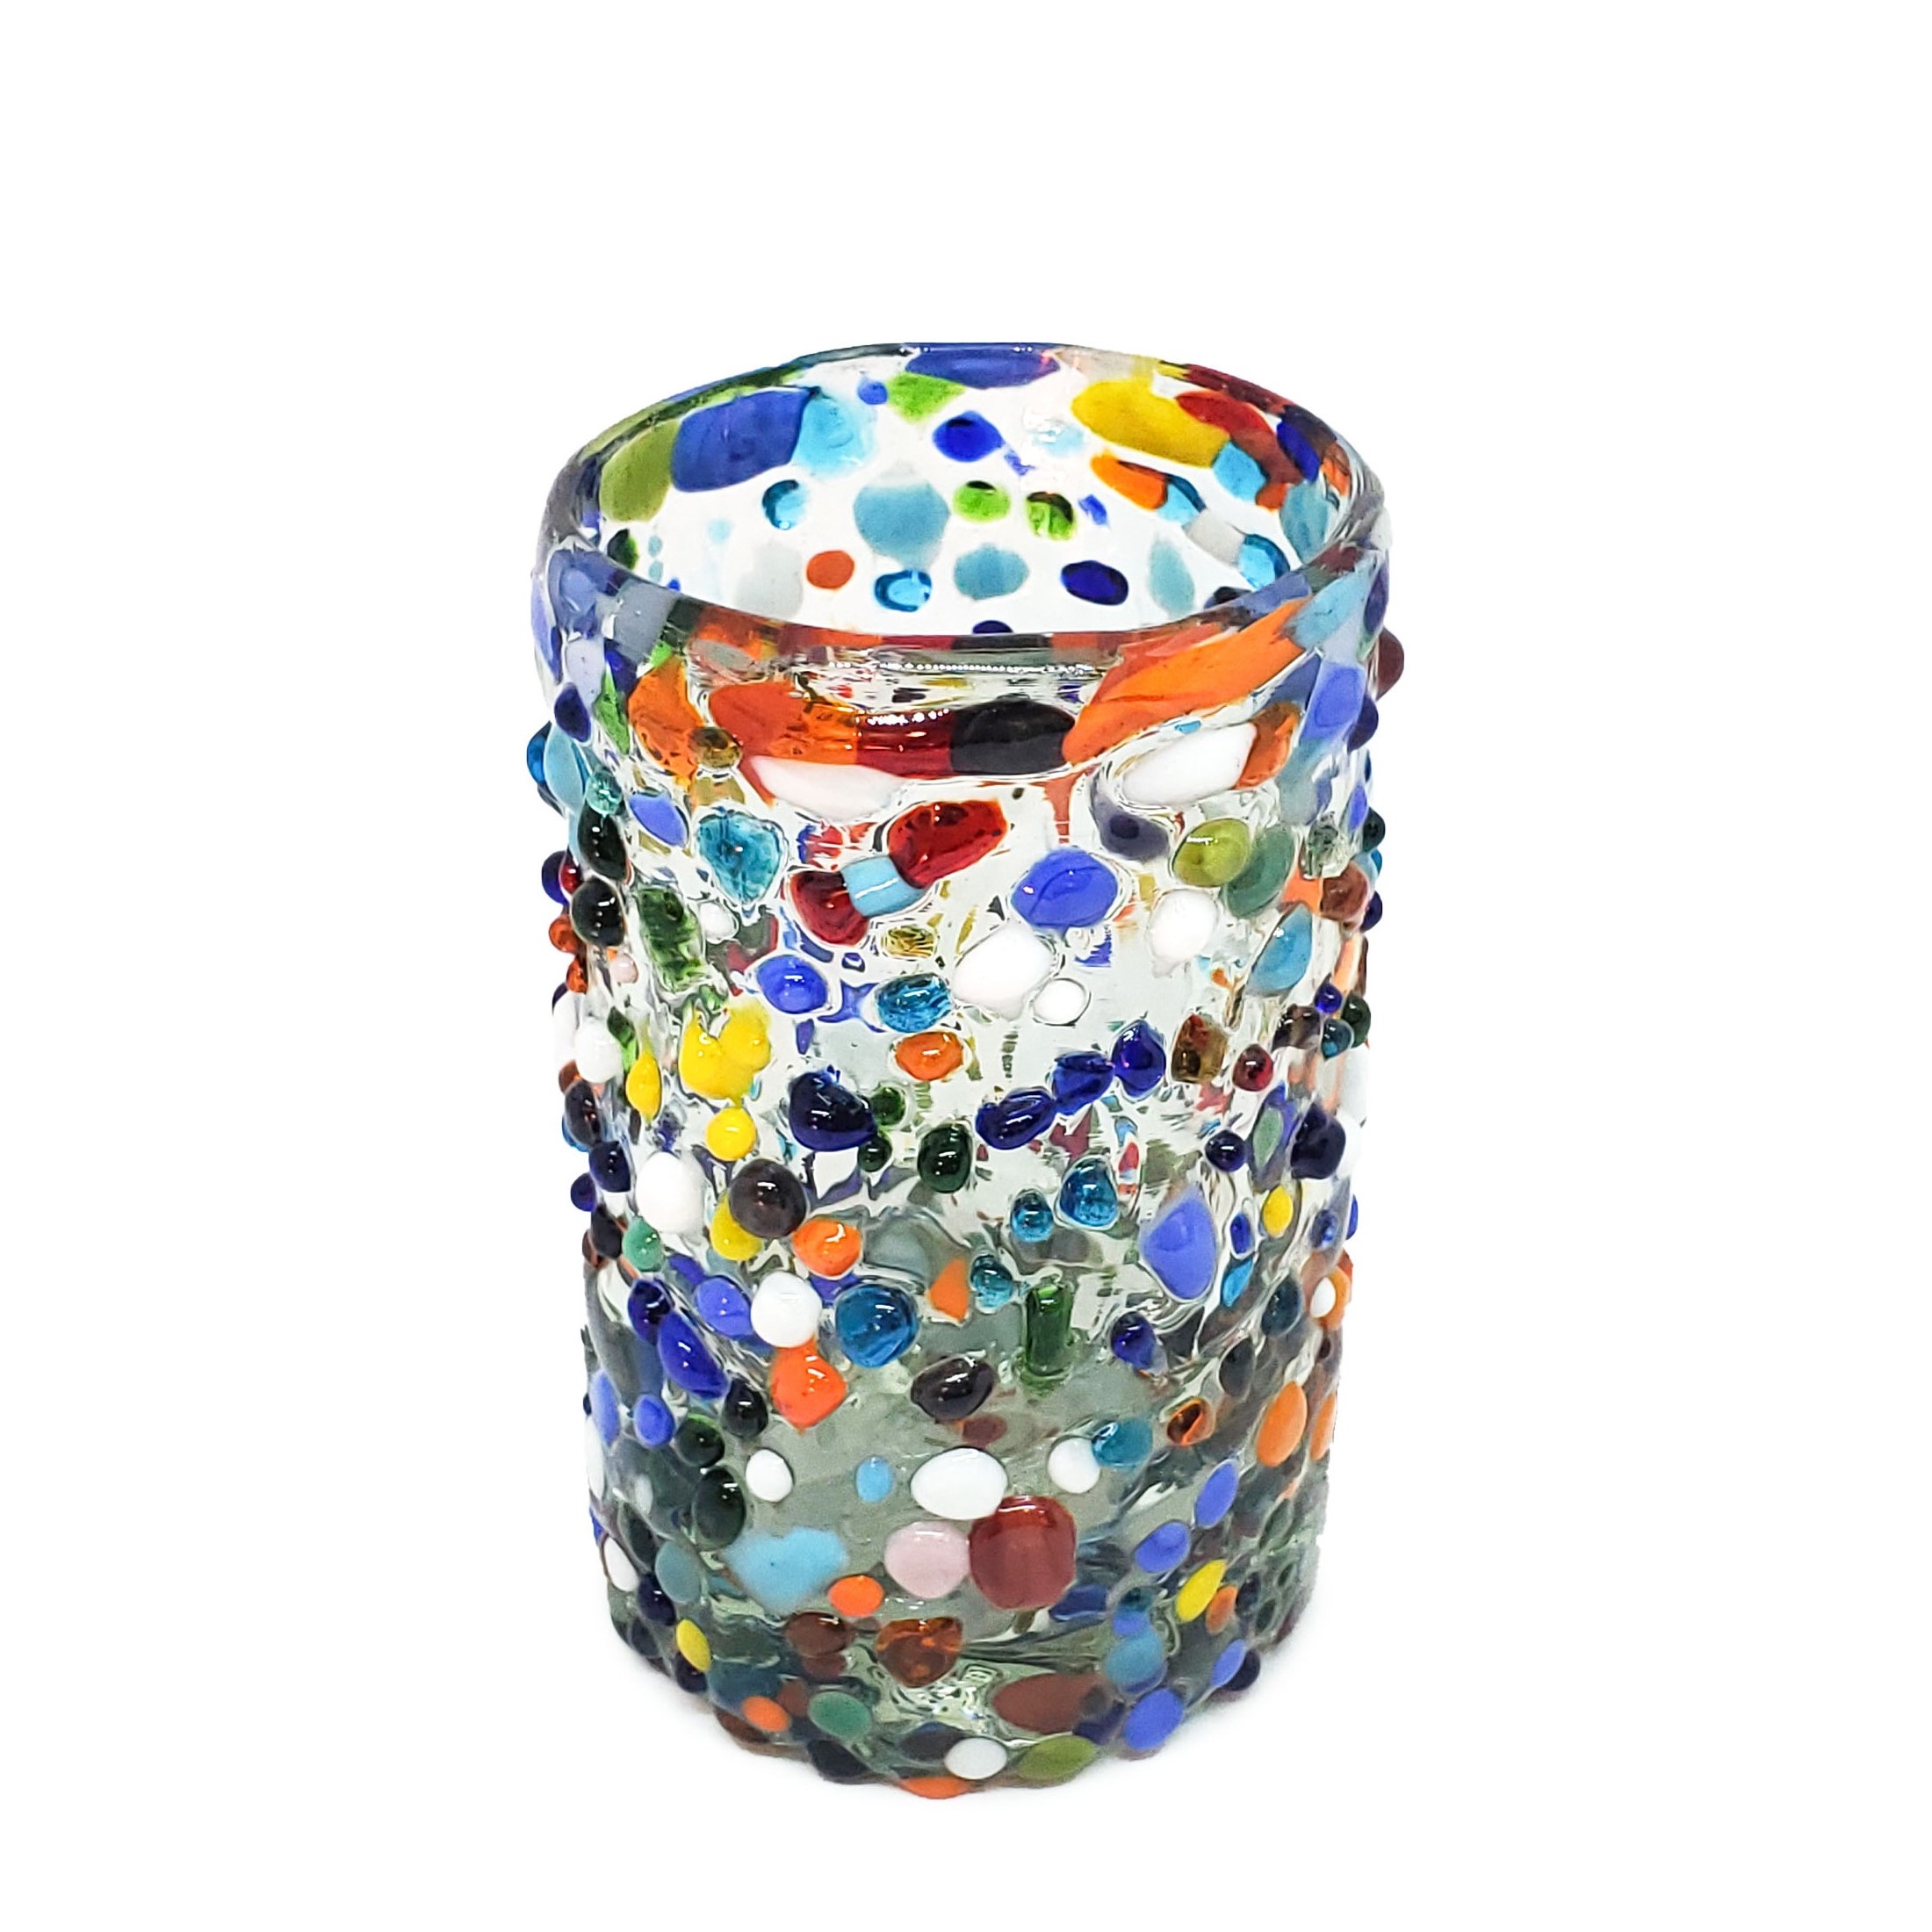 Novedades / Juego de 6 vasos Jugo 9oz Confeti granizado / Deje entrar a la primavera en su casa con éste colorido juego de vasos. El decorado con vidrio multicolor los hace resaltar en cualquier lugar.